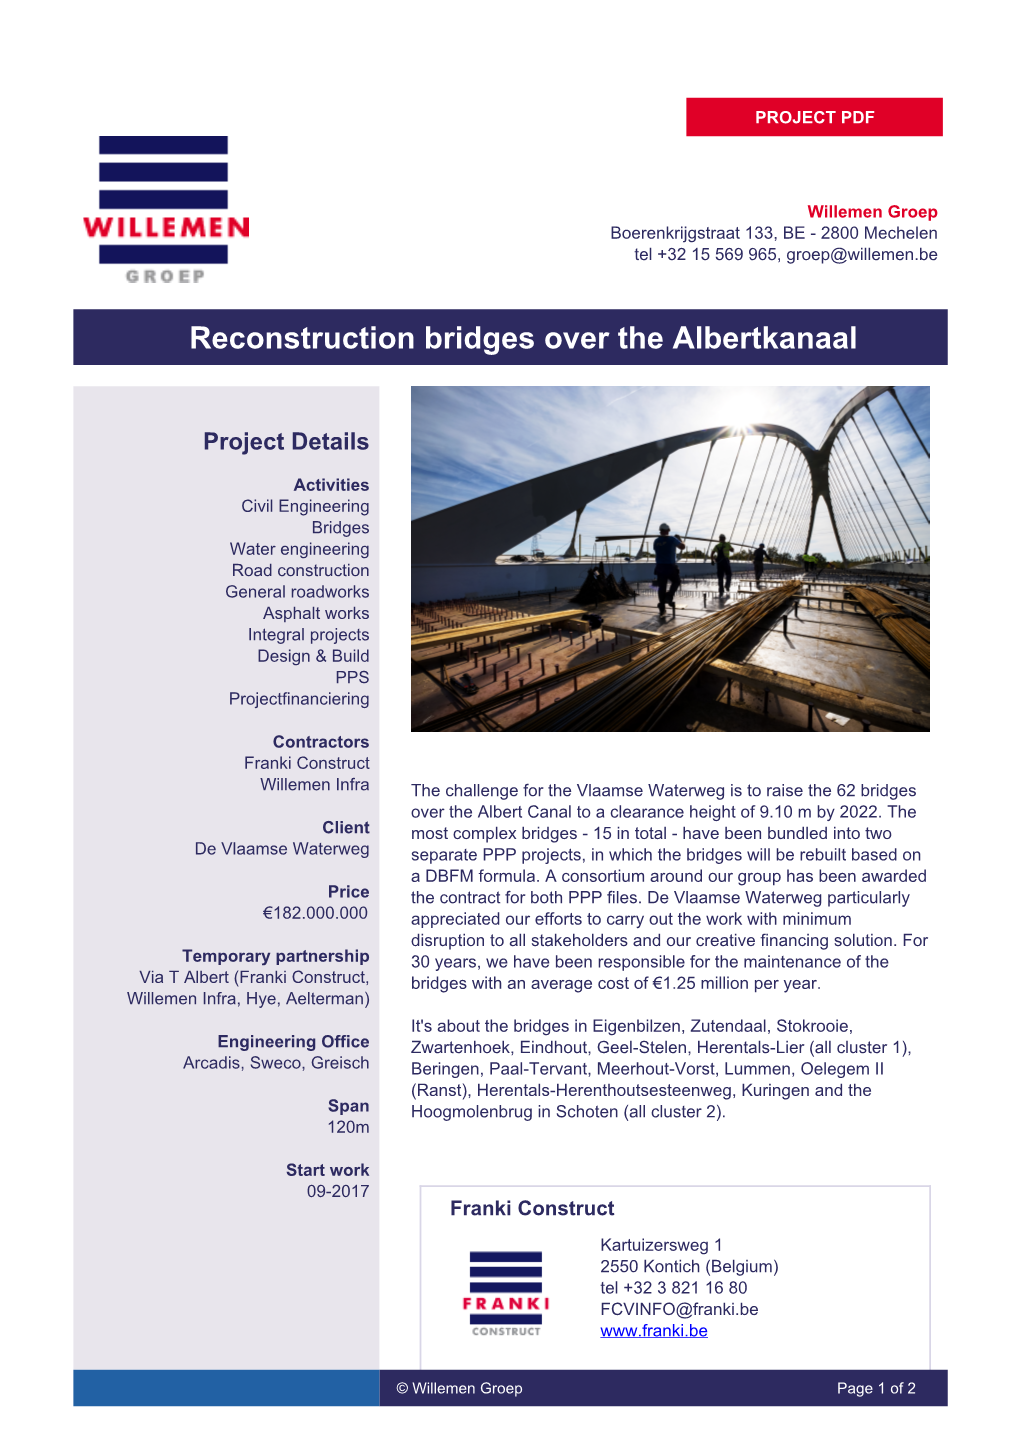 Reconstruction Bridges Over the Albertkanaal